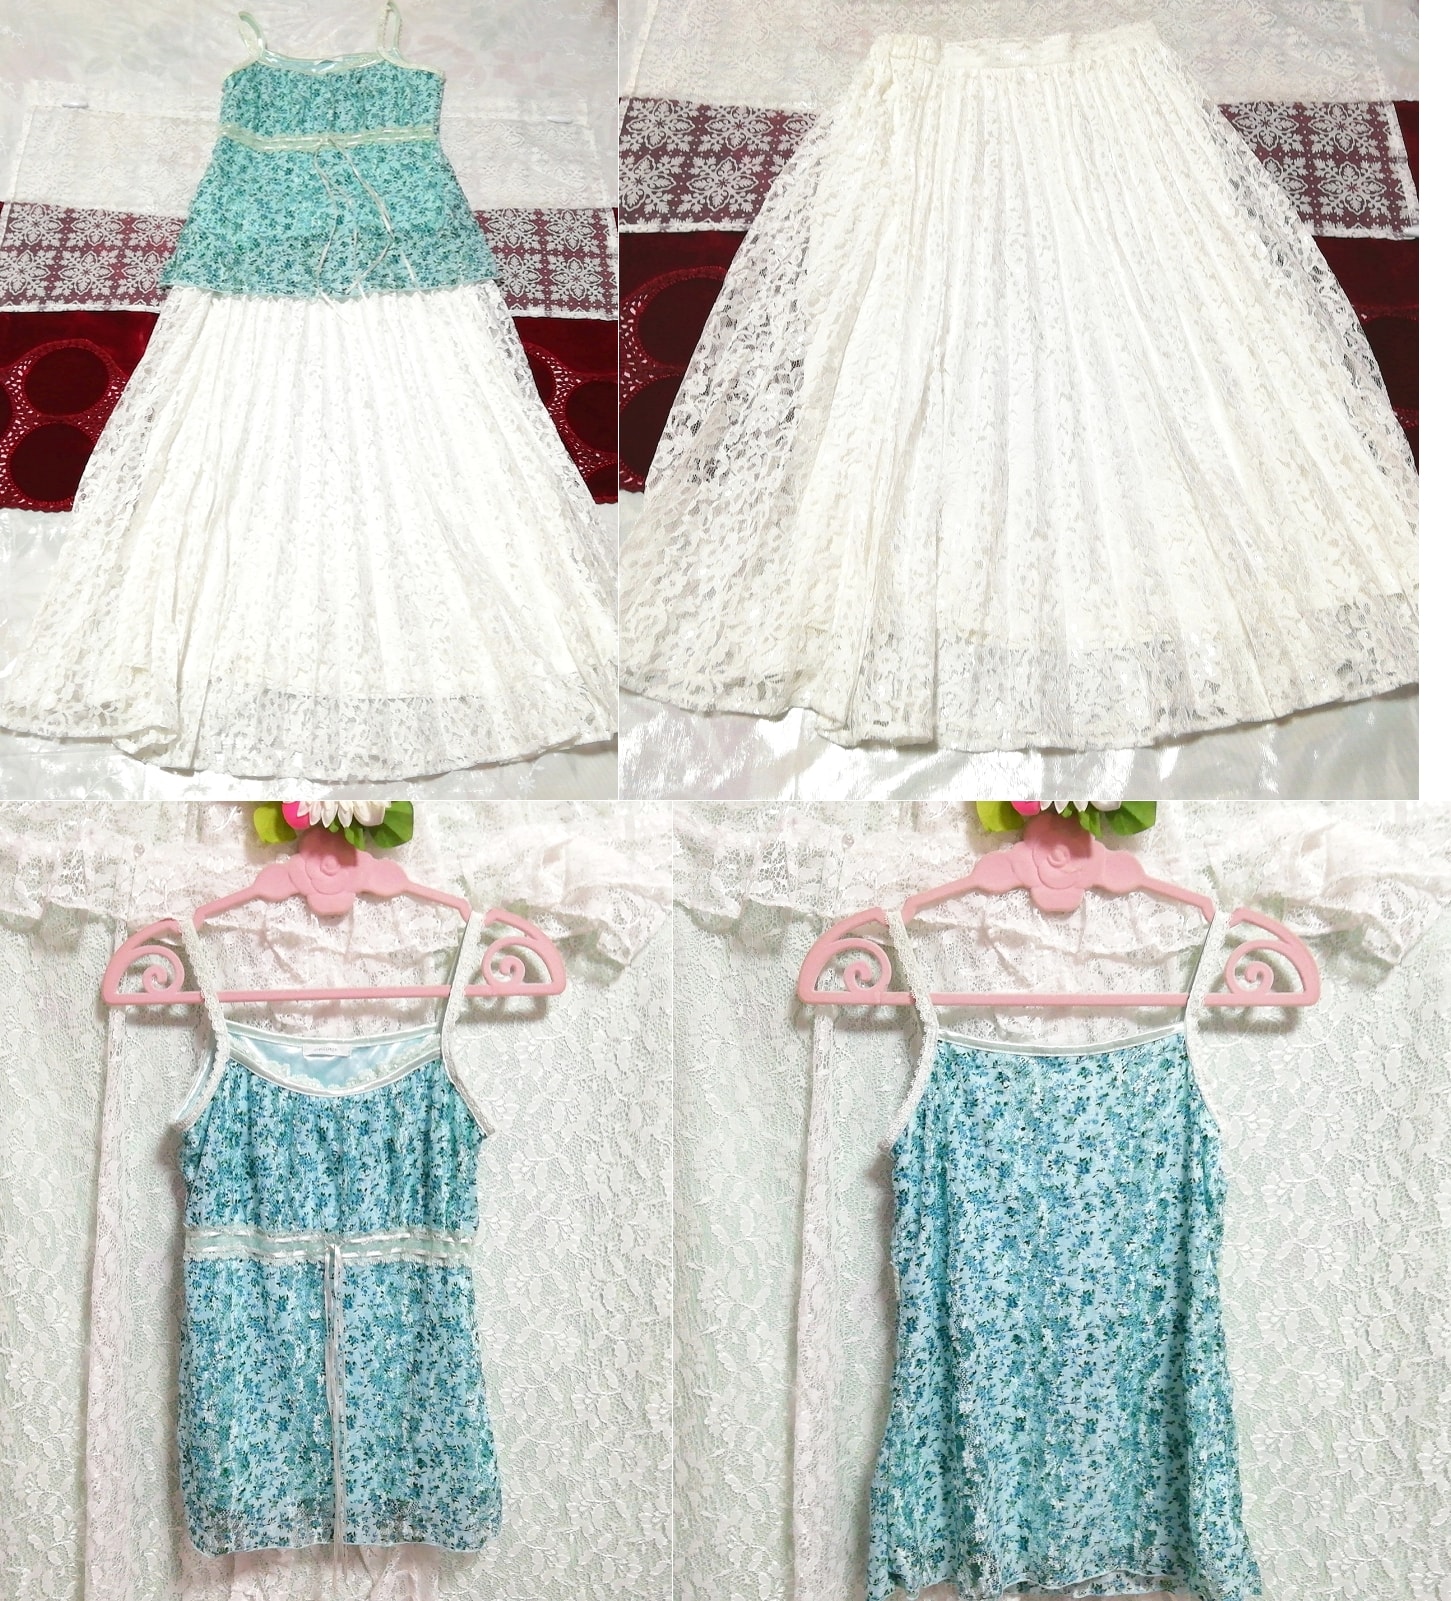 色緑花柄フリルレースキャミソール ネグリジェ 白レースロングスカート 2P Blue green flower pattern camisole negligee white lace skirt, ファッション, レディースファッション, ナイトウエア、パジャマ